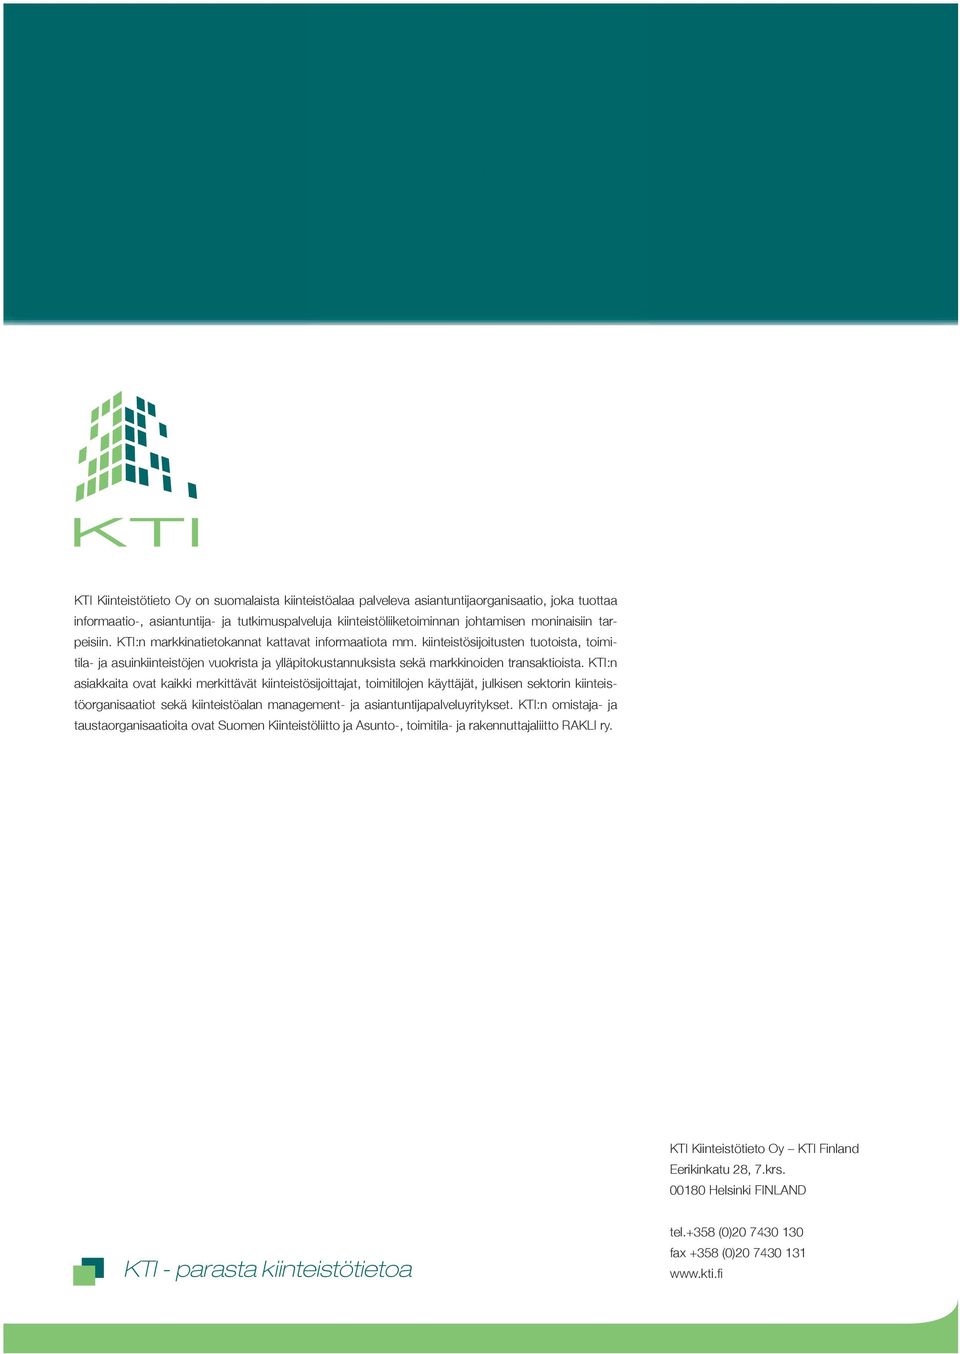 KTI:n asiakkaita ovat kaikki merkittävät kiinteistösijoittajat, toimitilojen käyttäjät, julkisen sektorin kiinteistöorganisaatiot sekä kiinteistöalan management- ja asiantuntijapalveluyritykset.